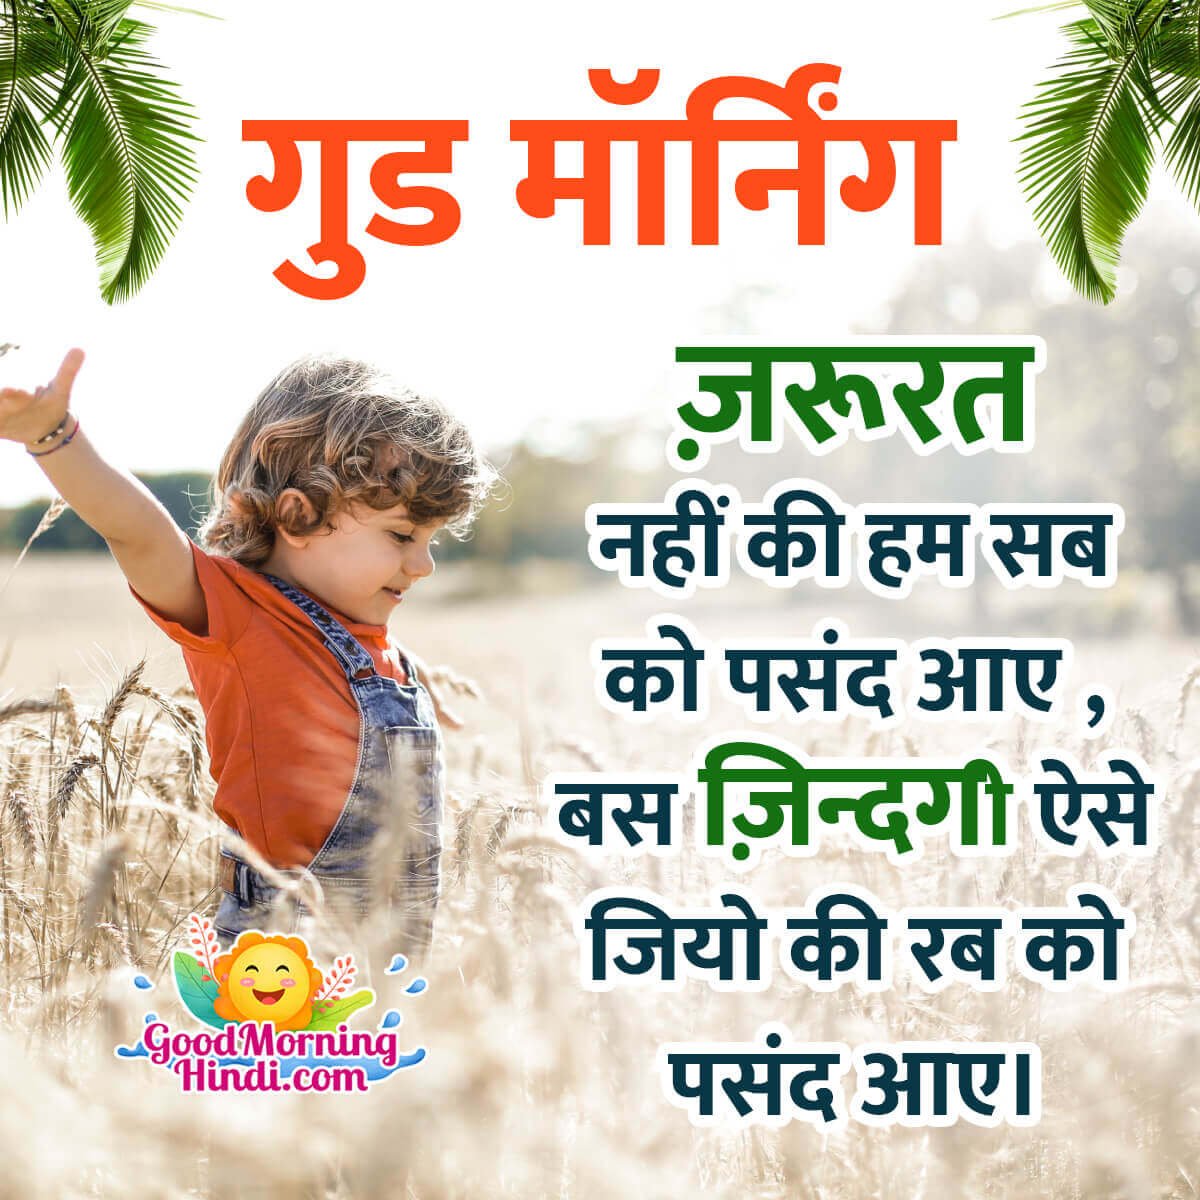 Good Morning Hindi Message Image